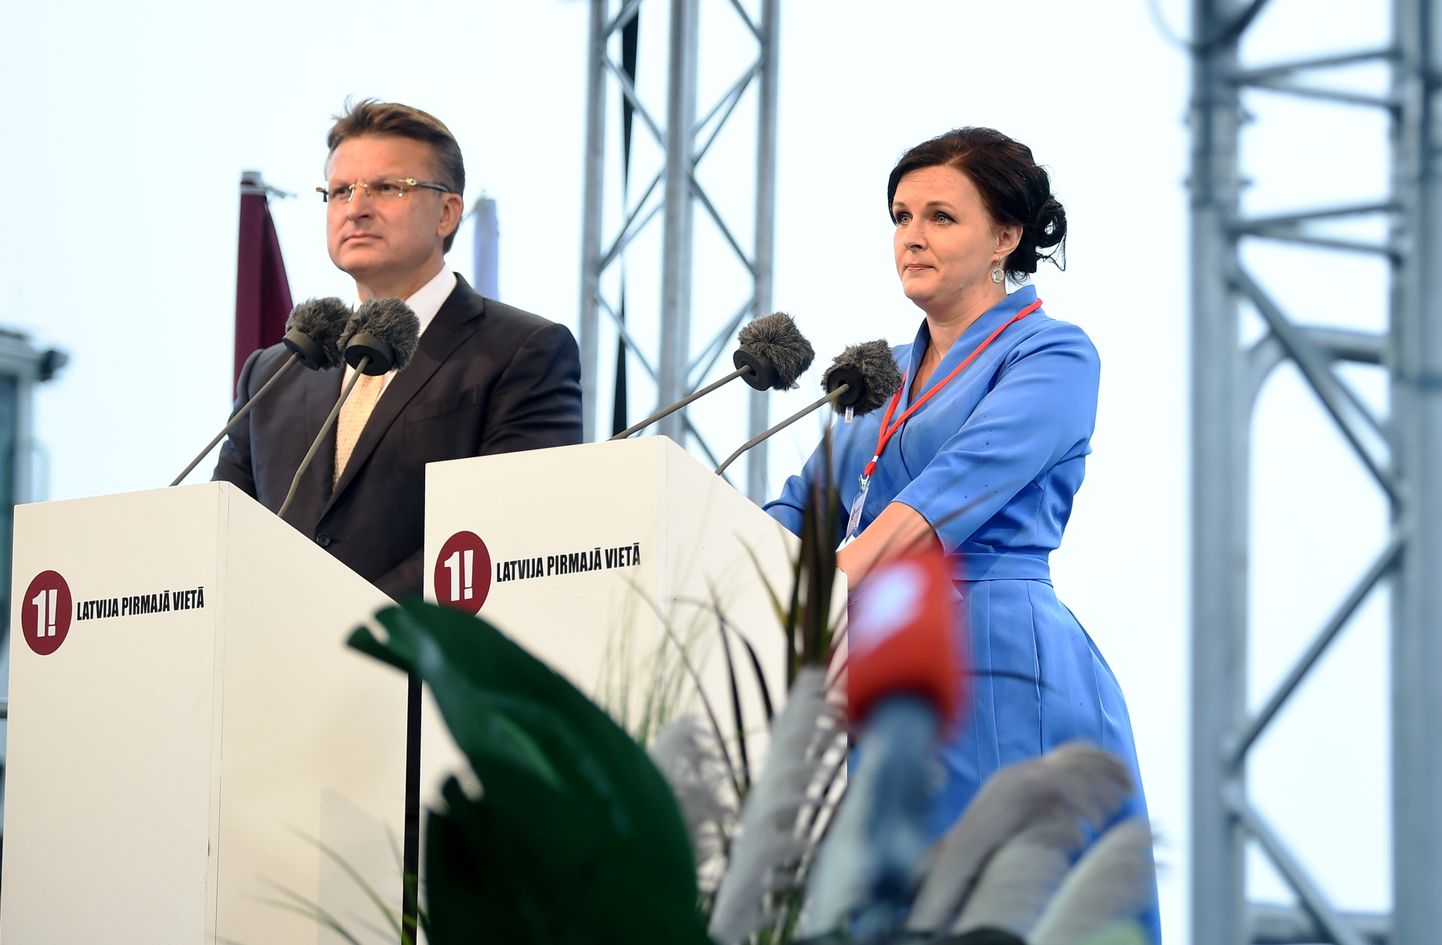 Politiķis Ainārs Šlesers un Saeimas deputāte Jūlija Stepaņenko piedalās partijas "Latvija pirmajā vietā" (LPV) dibināšanas kongresā.